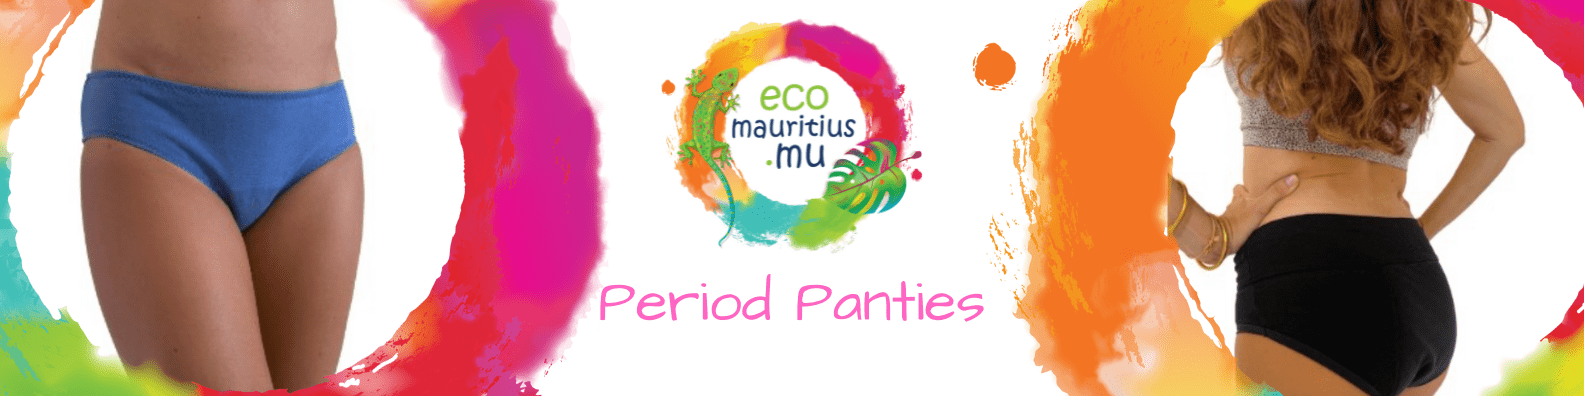 Period Panties EcoMauritius.mu